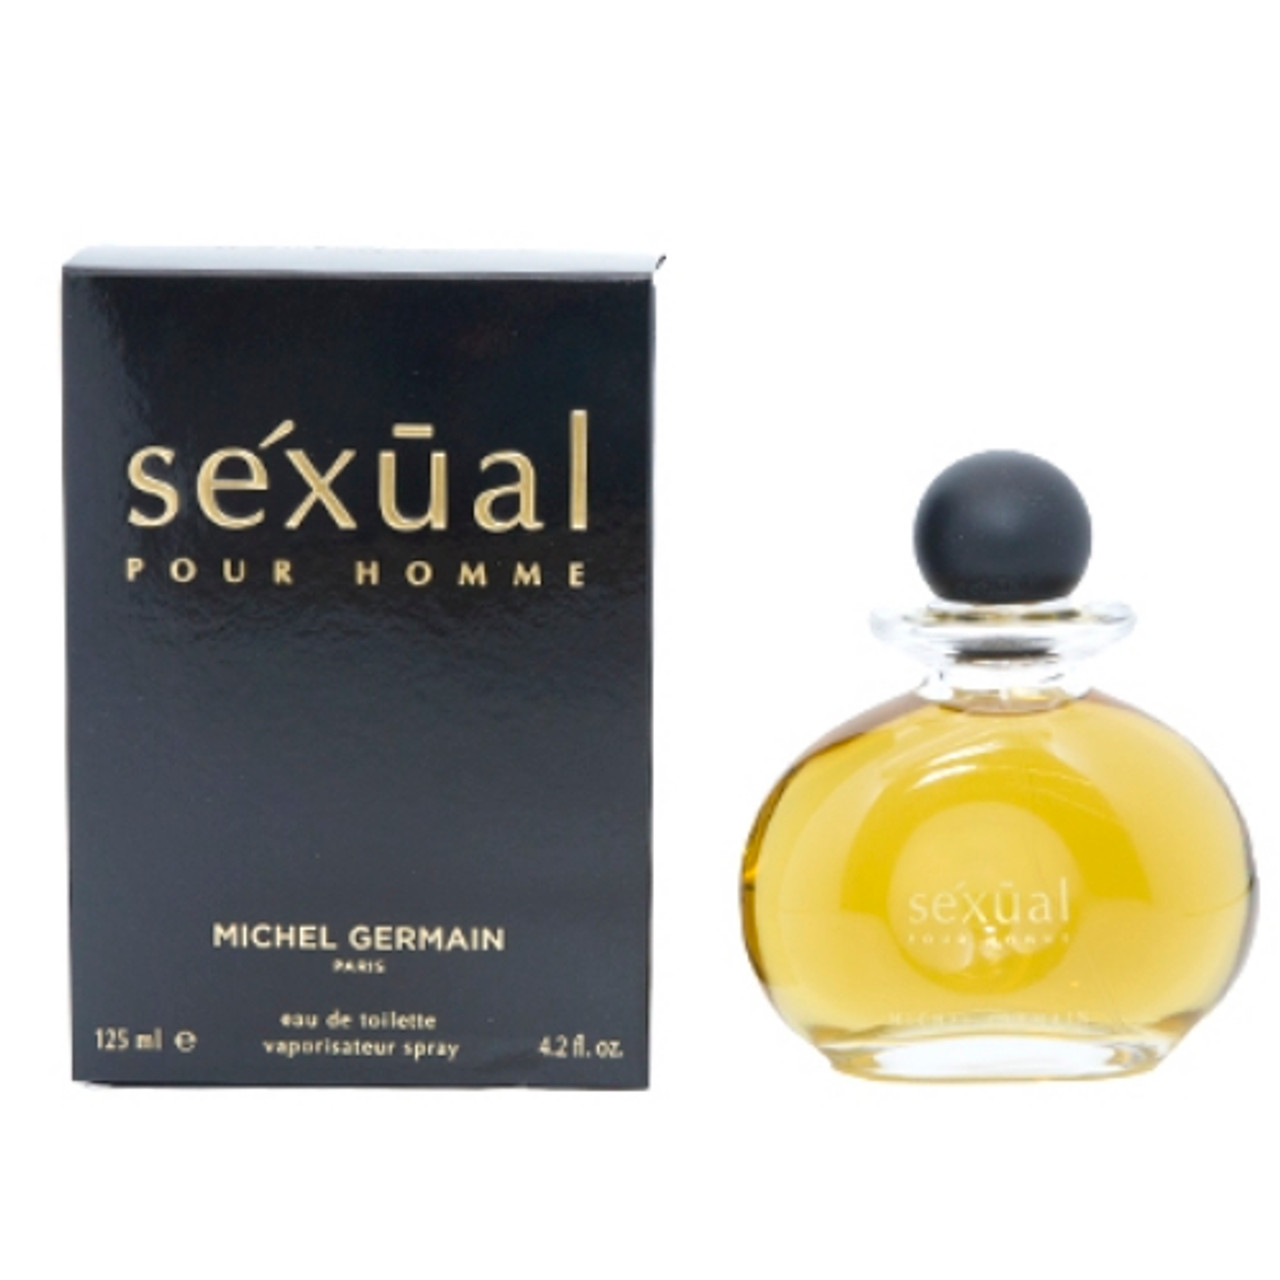 Sexual Noir Cologne. Pour Homme Cologne Eau de Toilette Spray. Noir for Men.